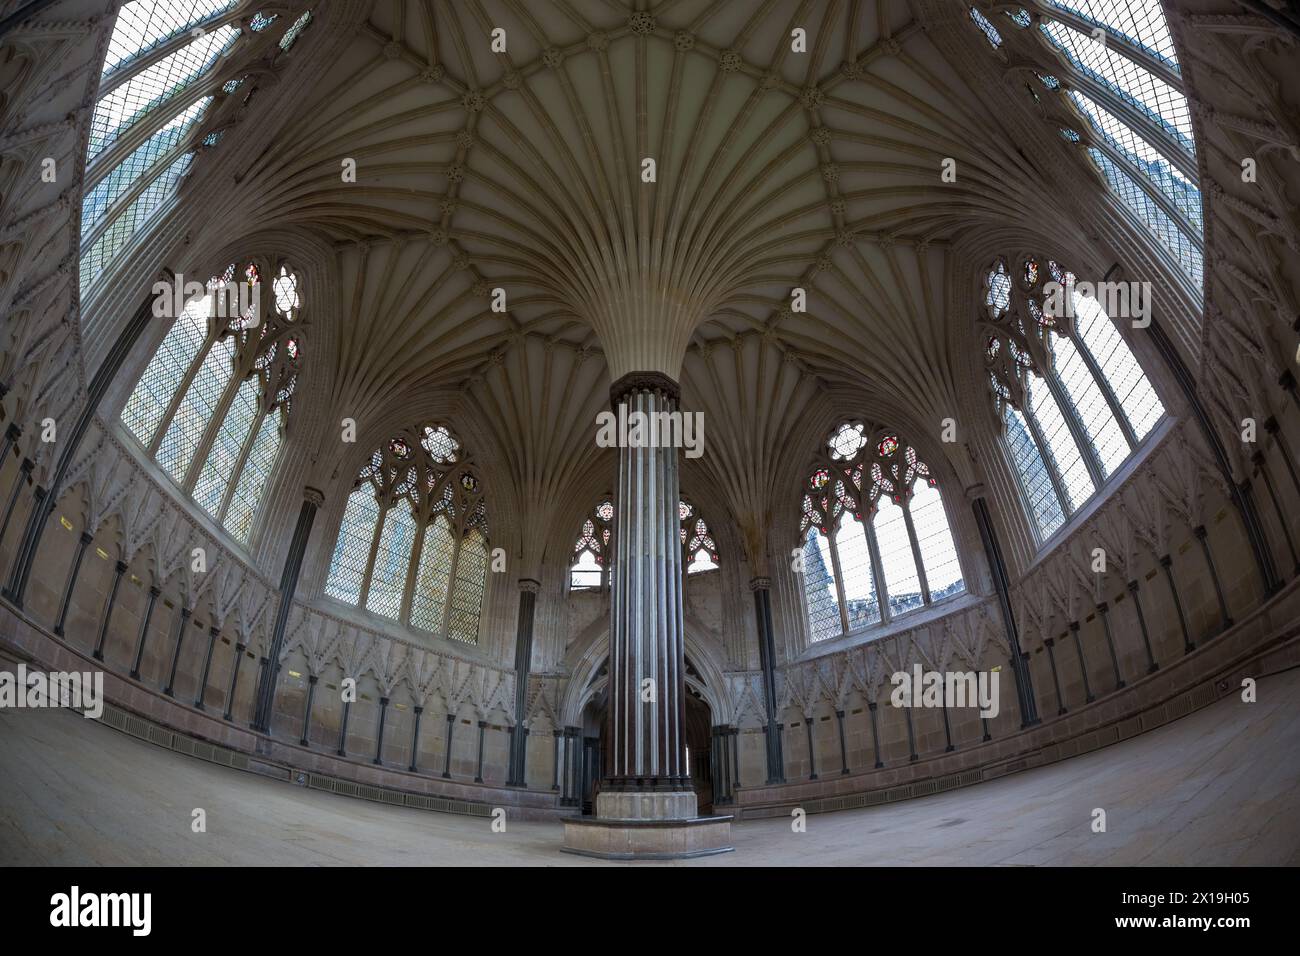 Image de lentille fisheye de l'intérieur de la cathédrale Well Banque D'Images